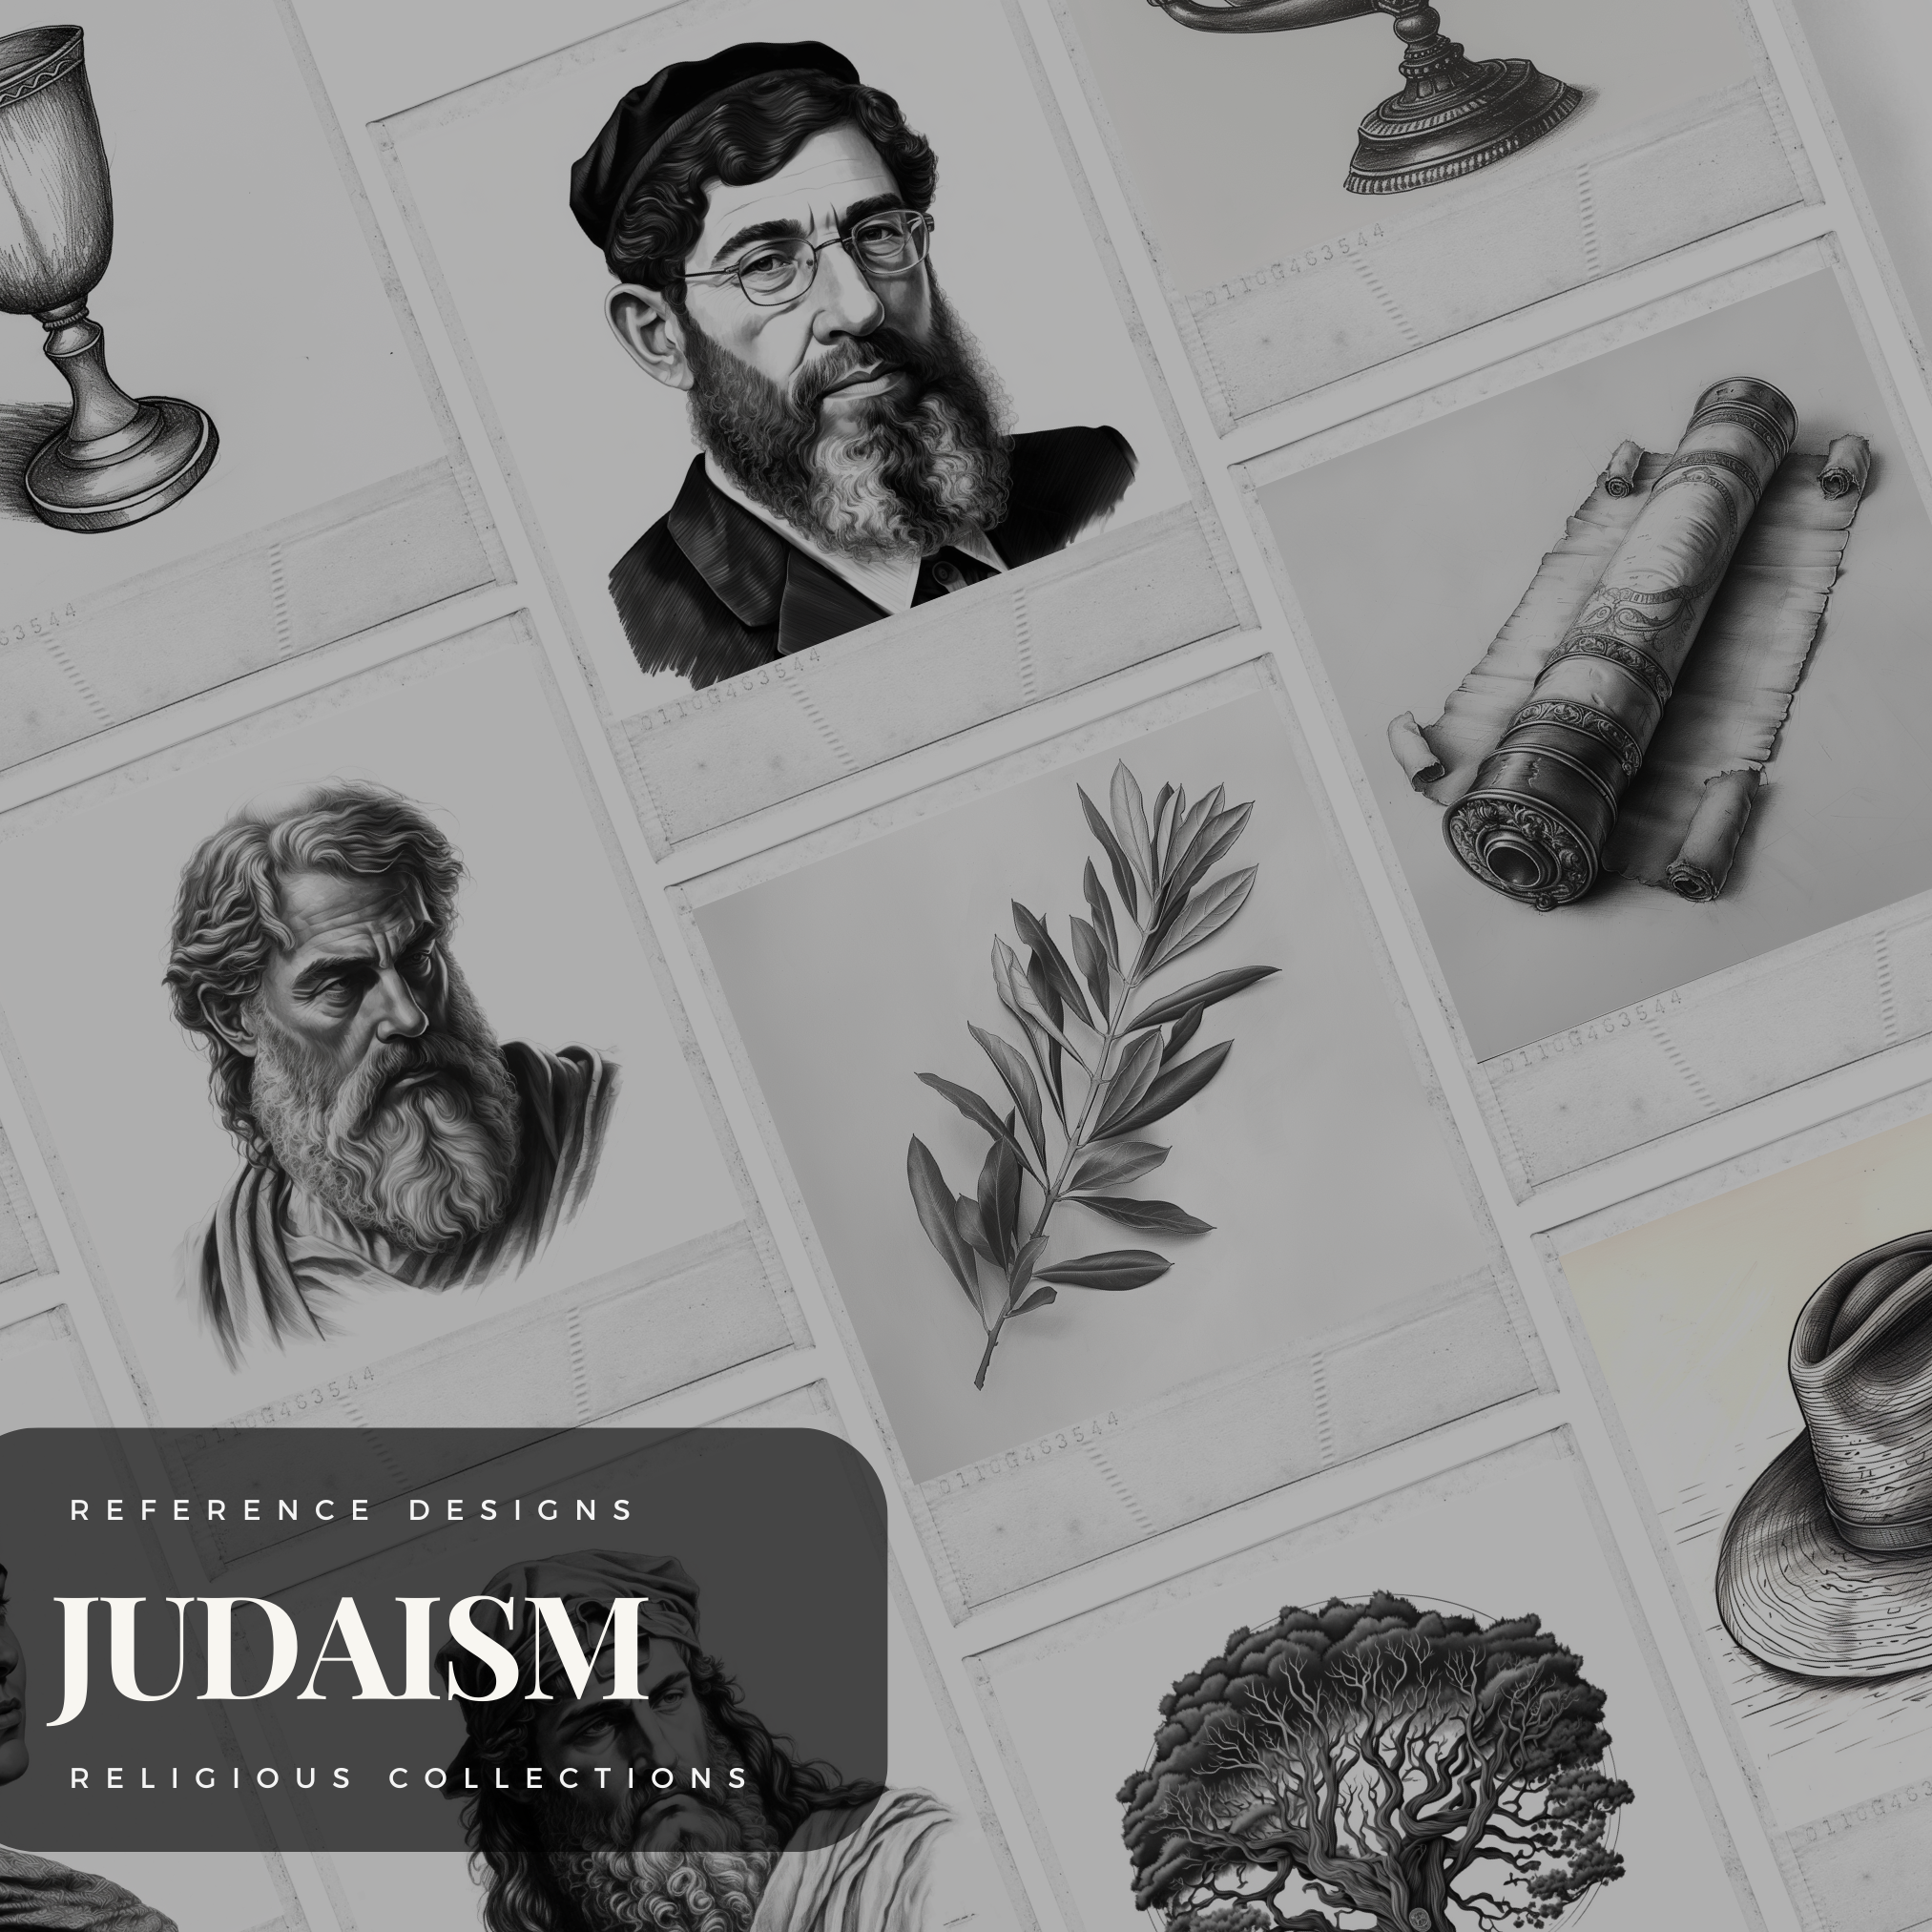 Judaism Digital Design Collection: 100 Procreate & Sketchbook Images